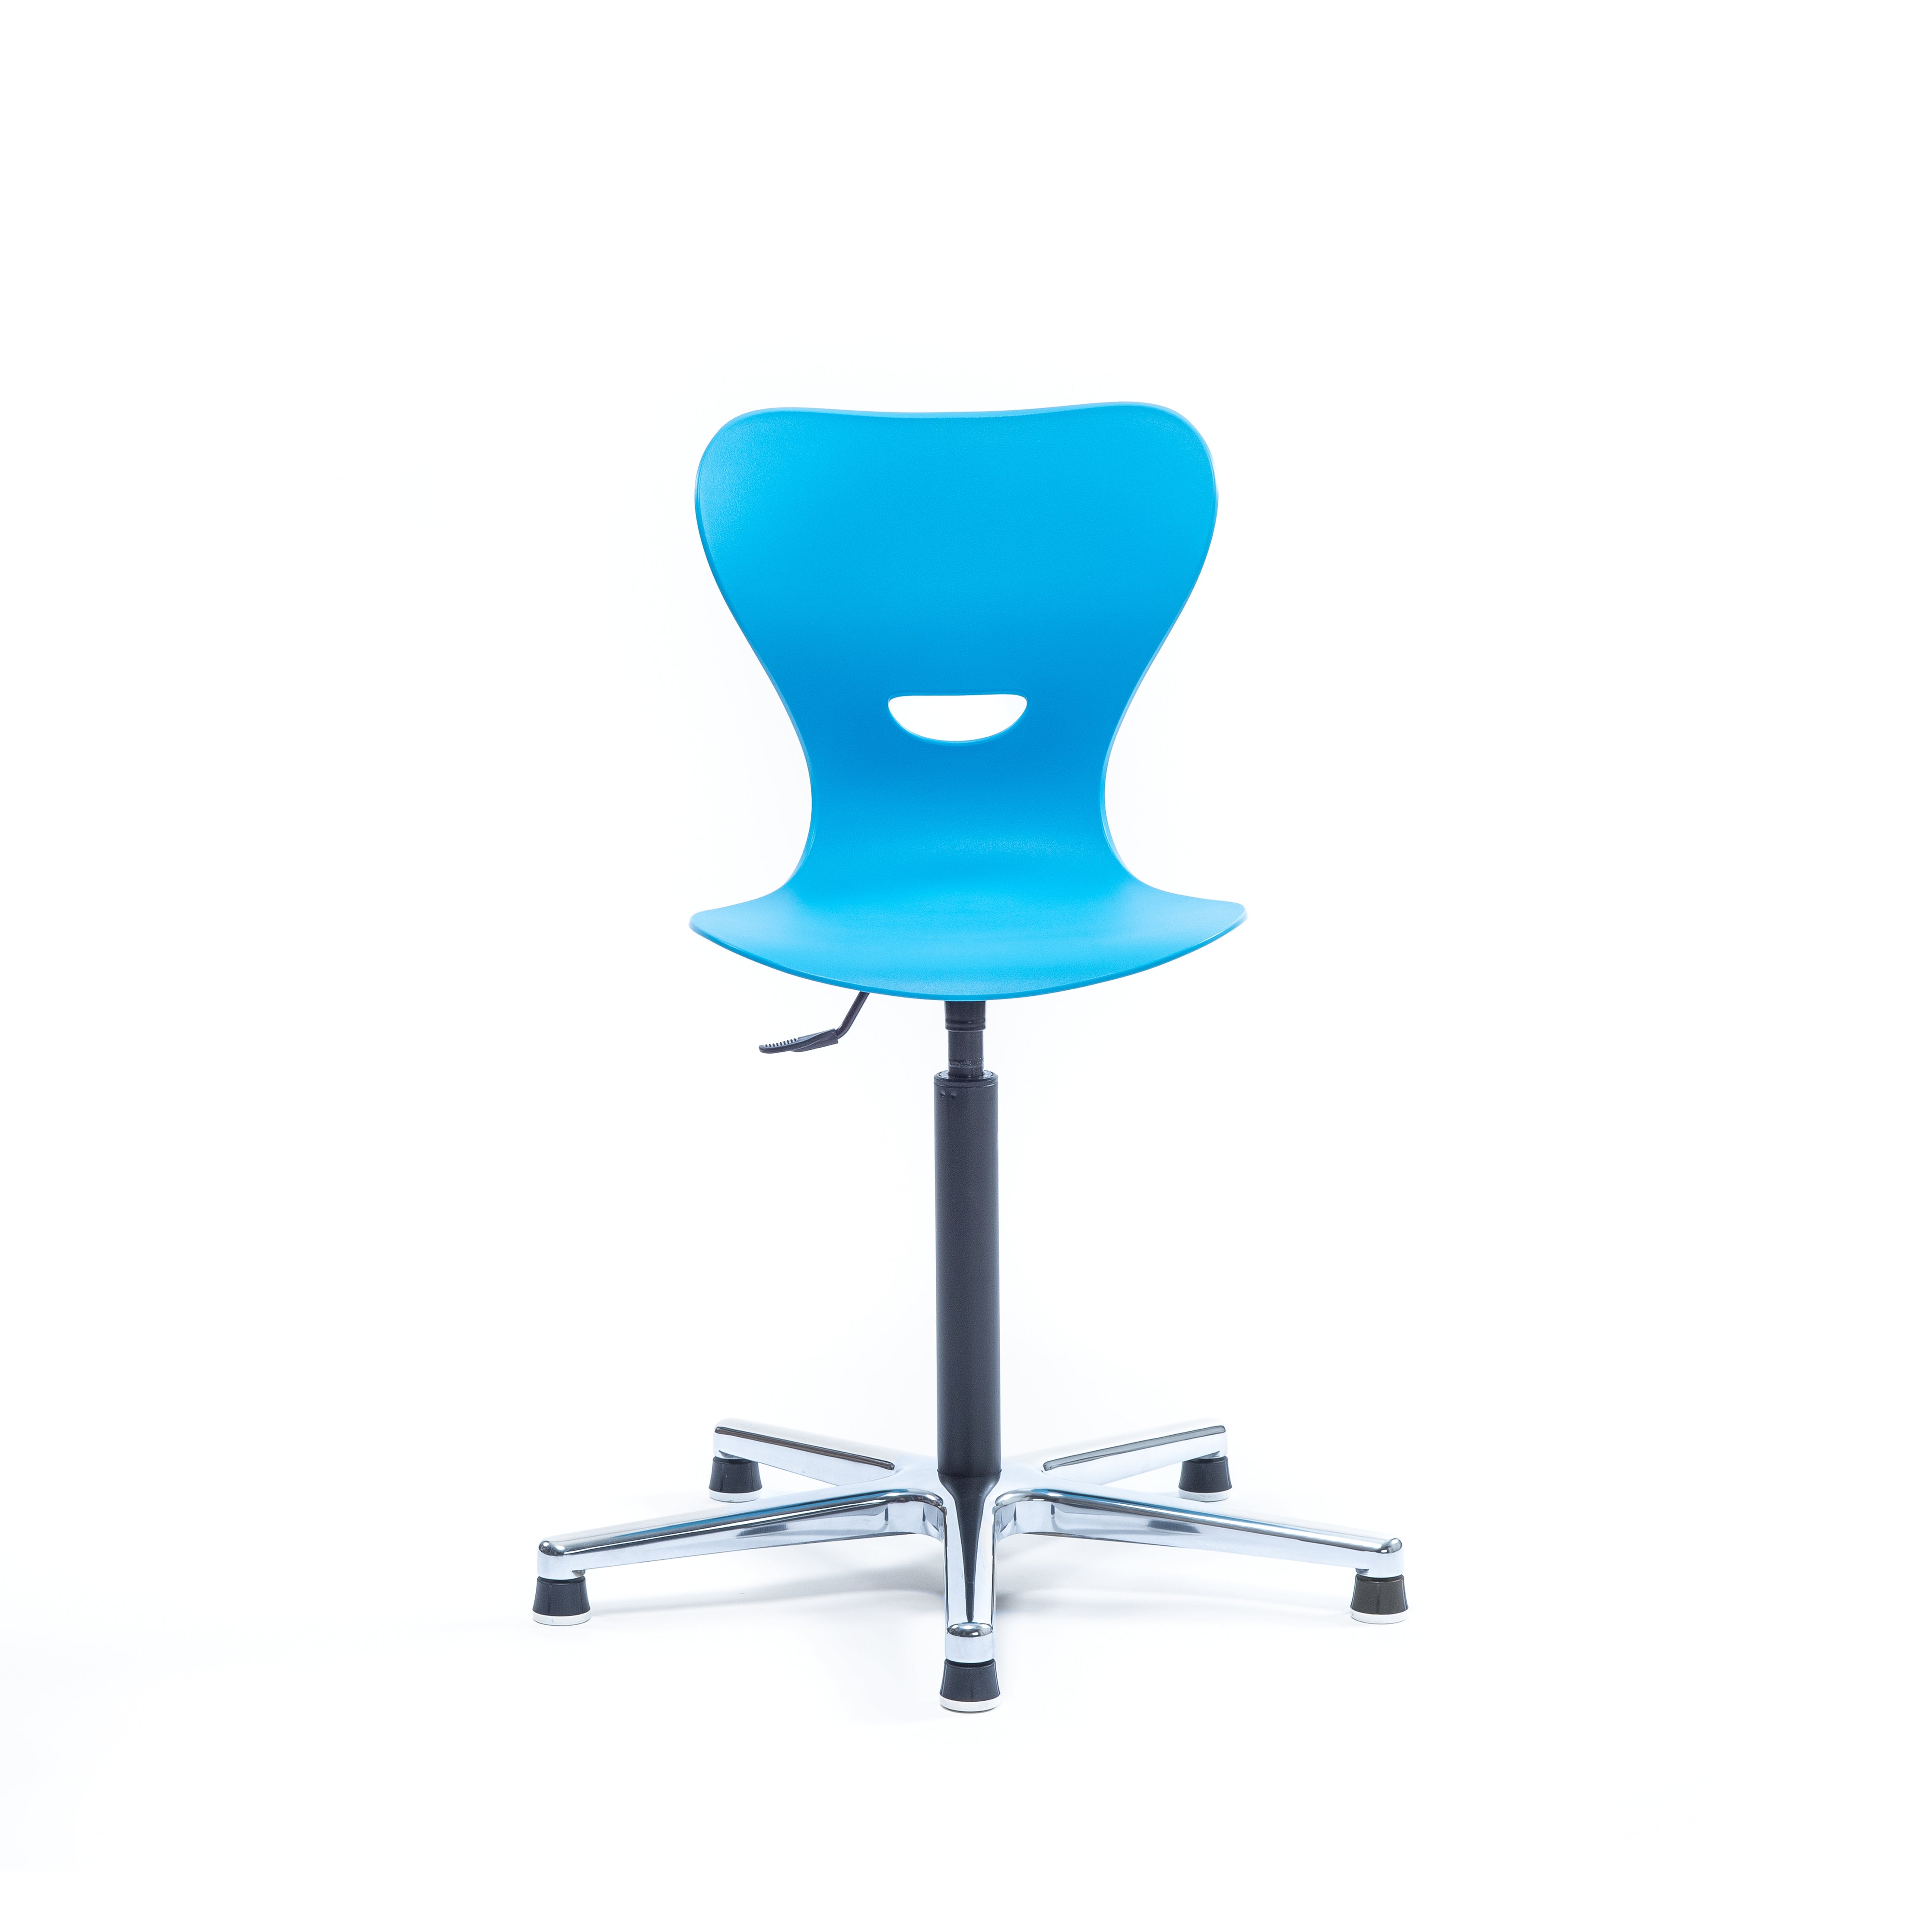 Schulstuhl höhenverstellbar mit blauer Sitzschale aus Kunststoff und Griffloch